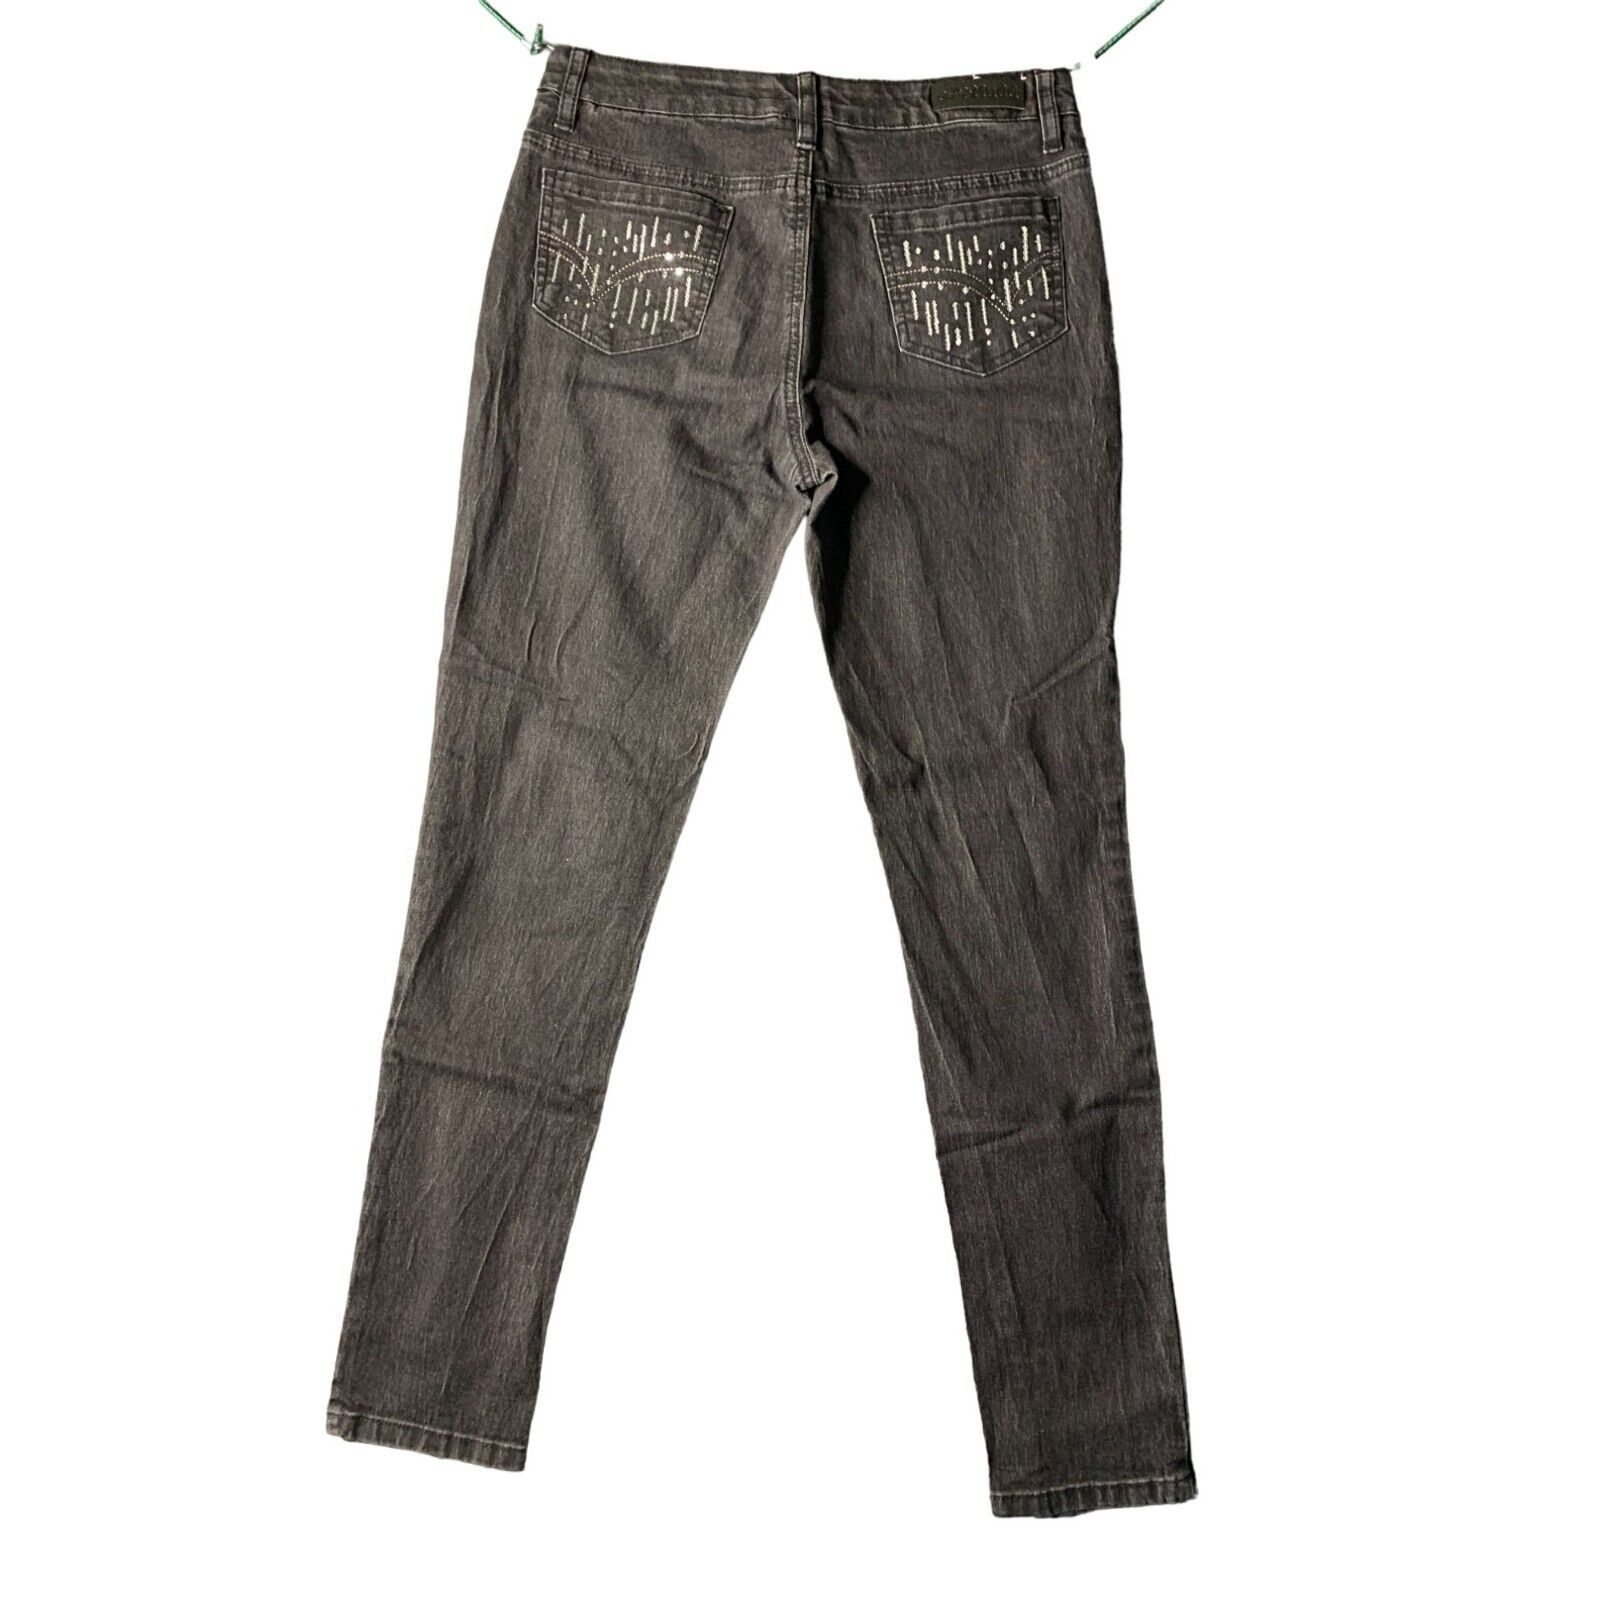 Mudd Girls Size 16 Jegging Black Jeans Denim Sequin Silver Pockets - $14.84